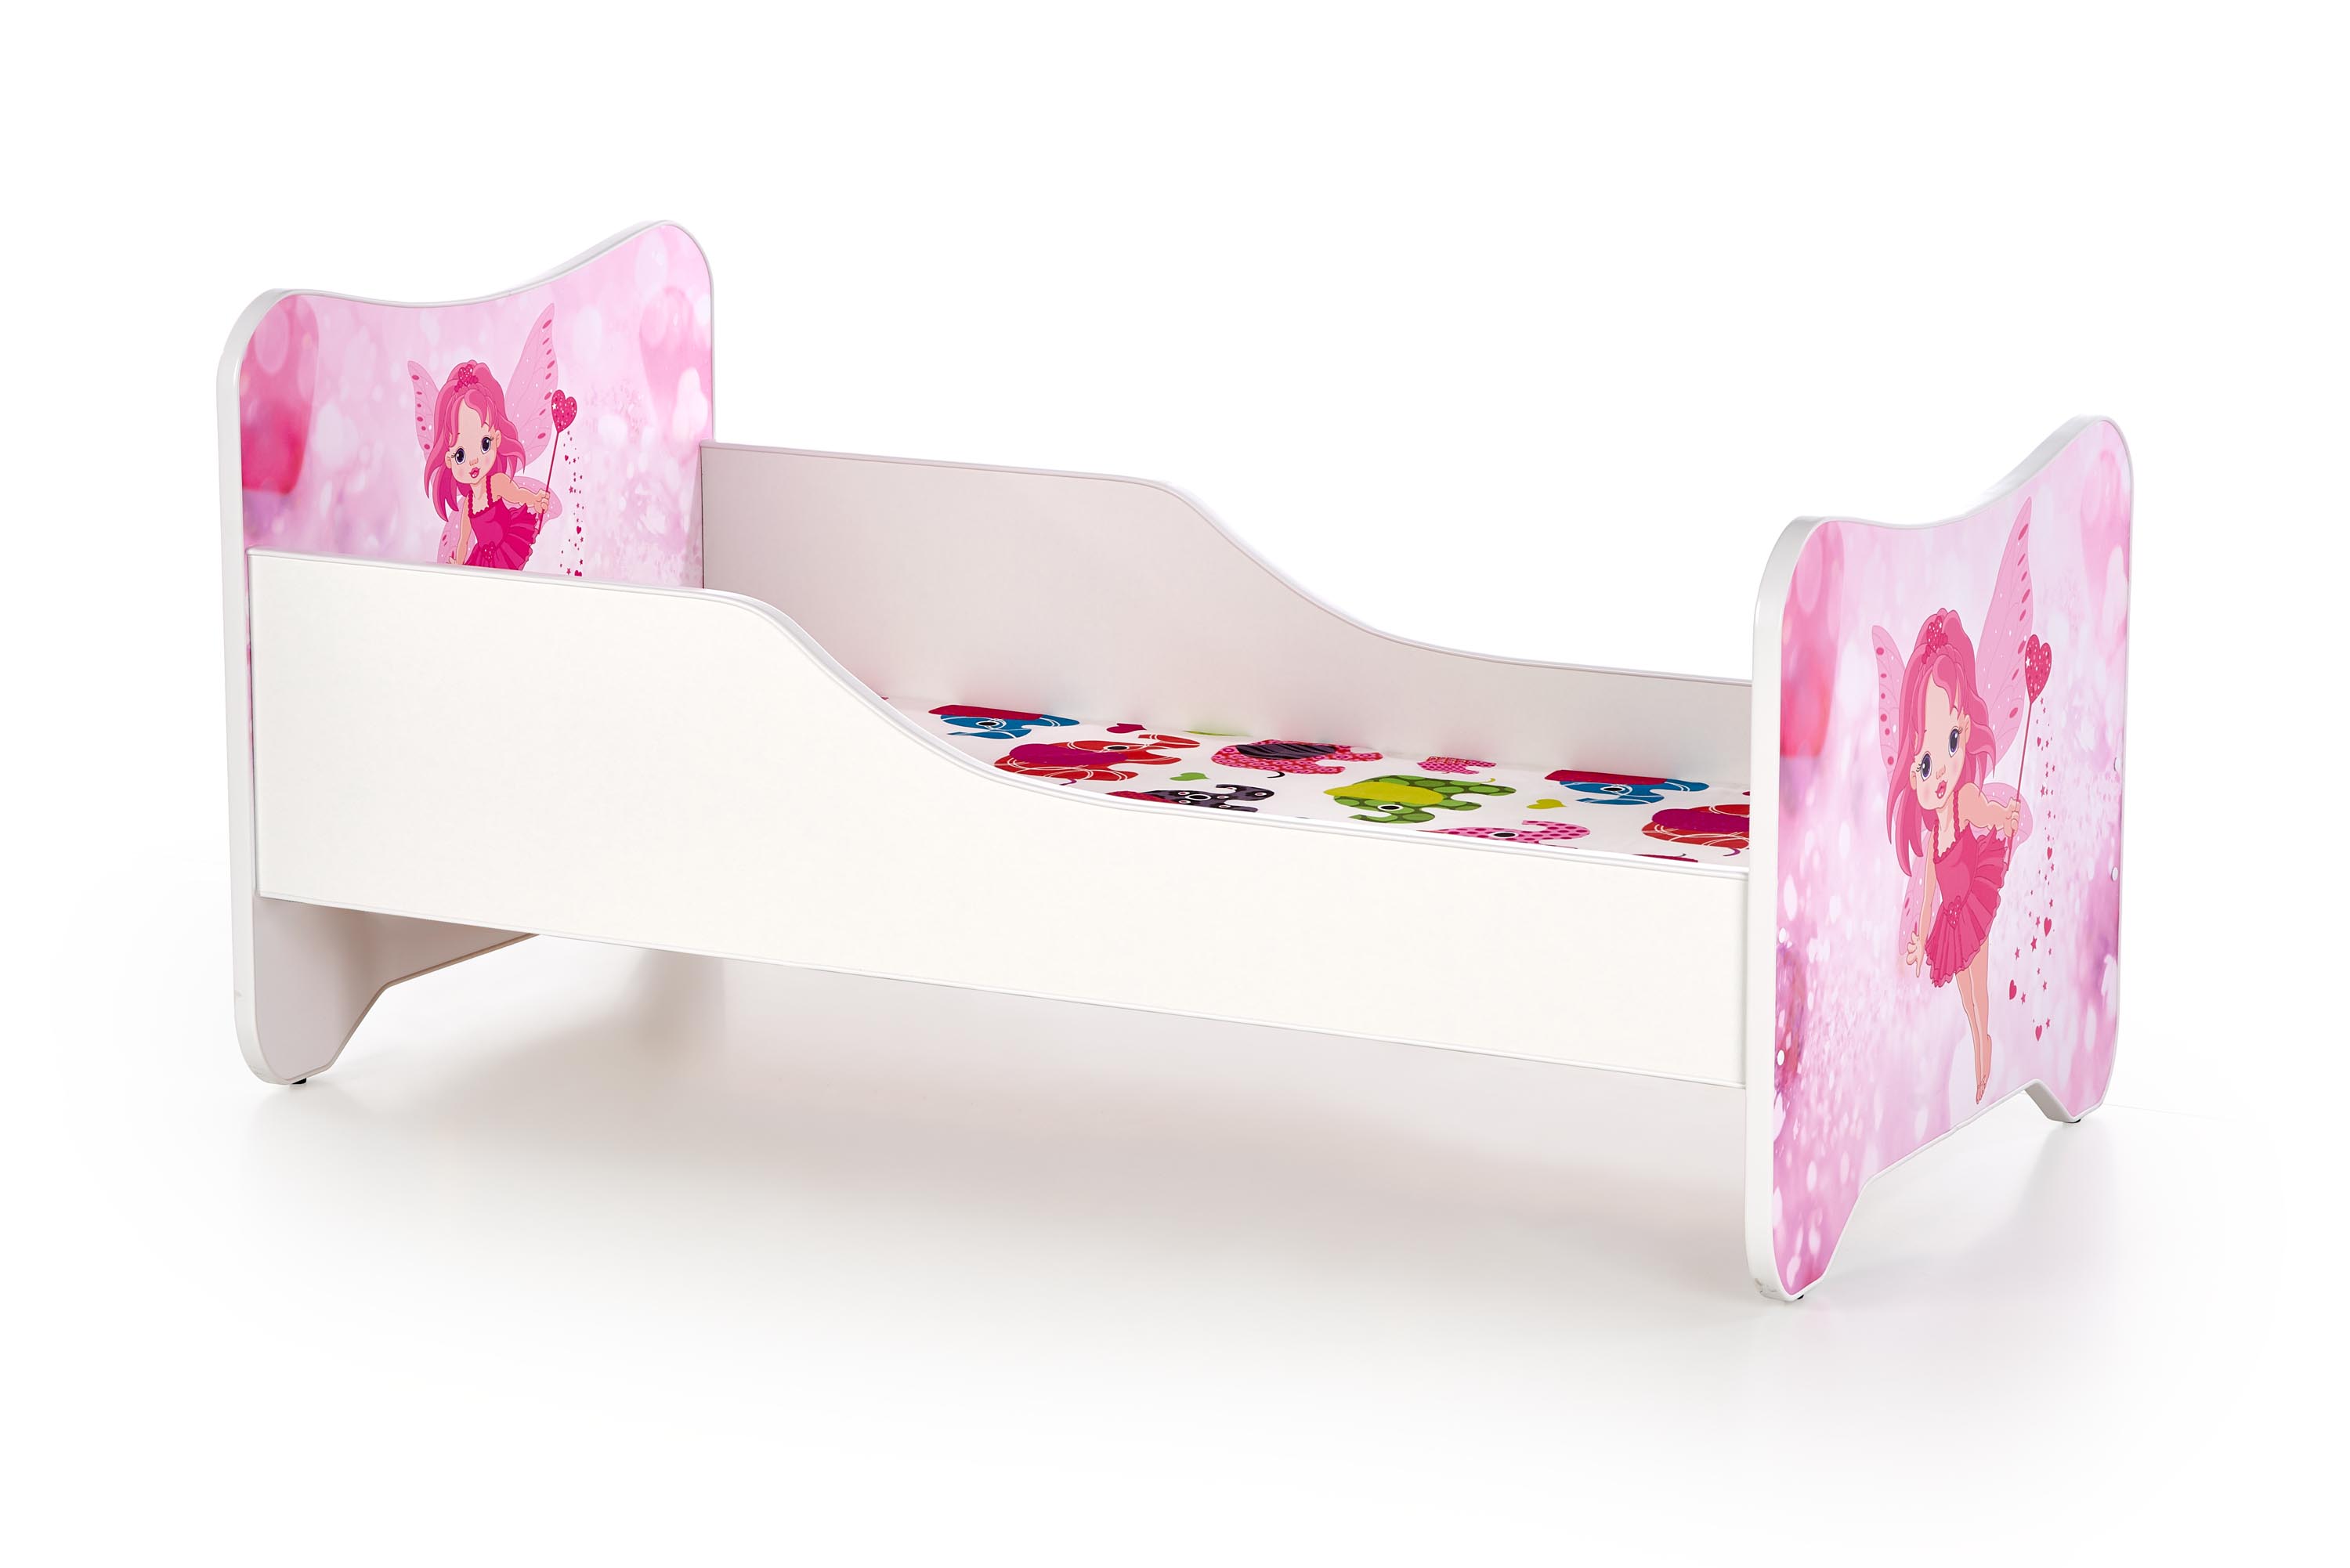 Detská posteľ Happy Fairy - 145x76 cm - biela / ružová Posteľ detská happy fairy - Biely / Ružová